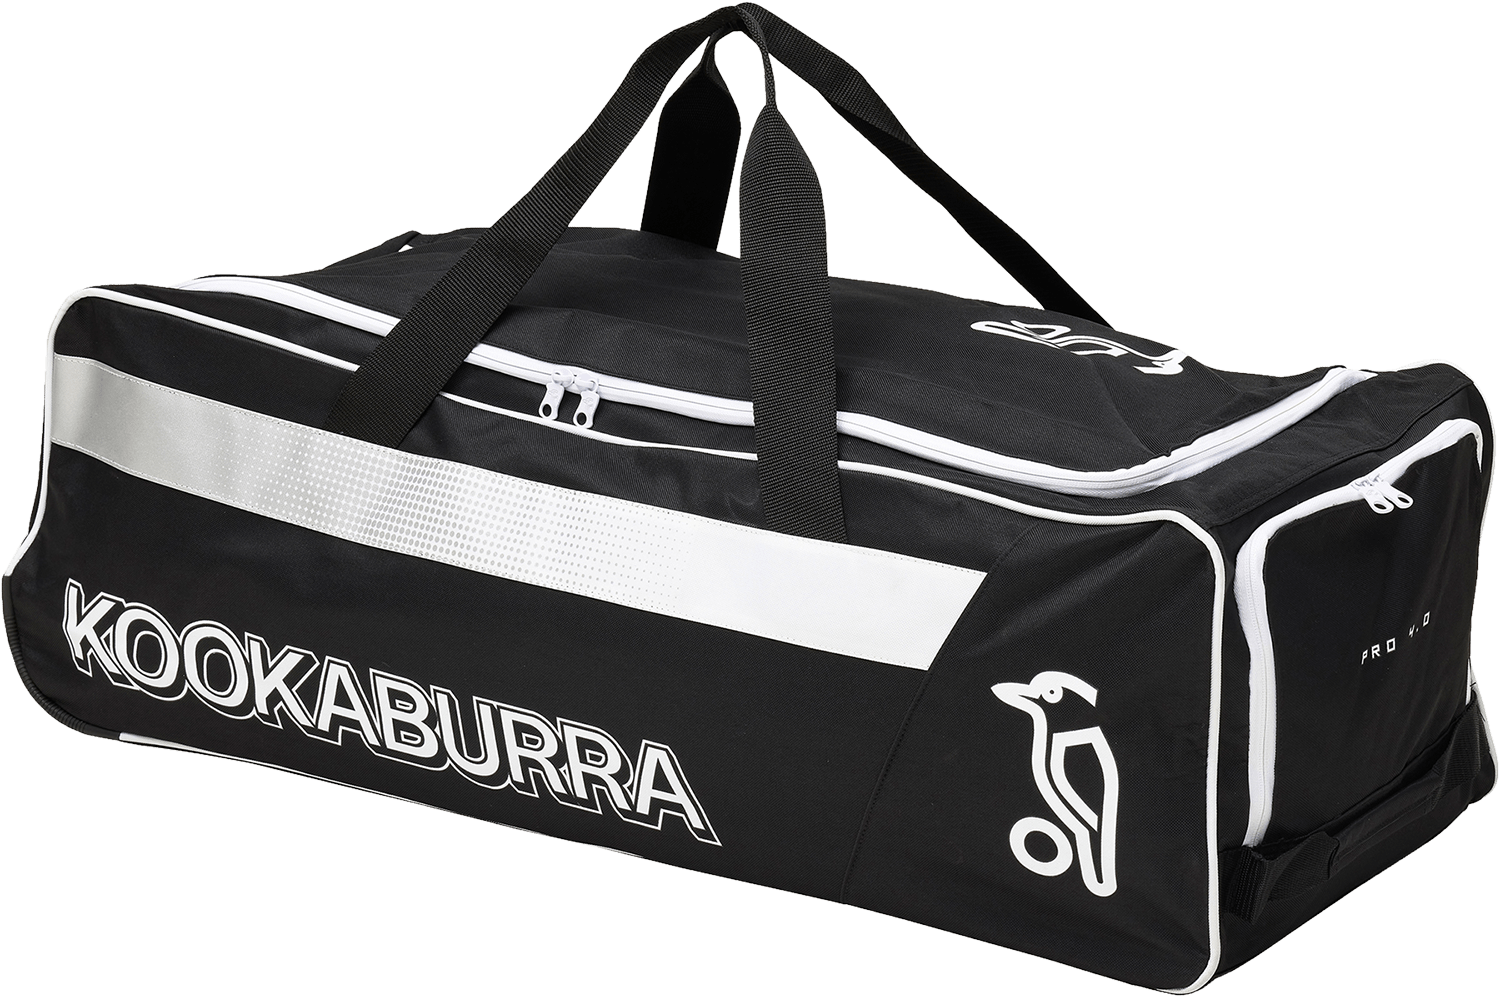 Kookaburra Cricket Bags Kookaburra 4.0 Wheelie Cricket Bag